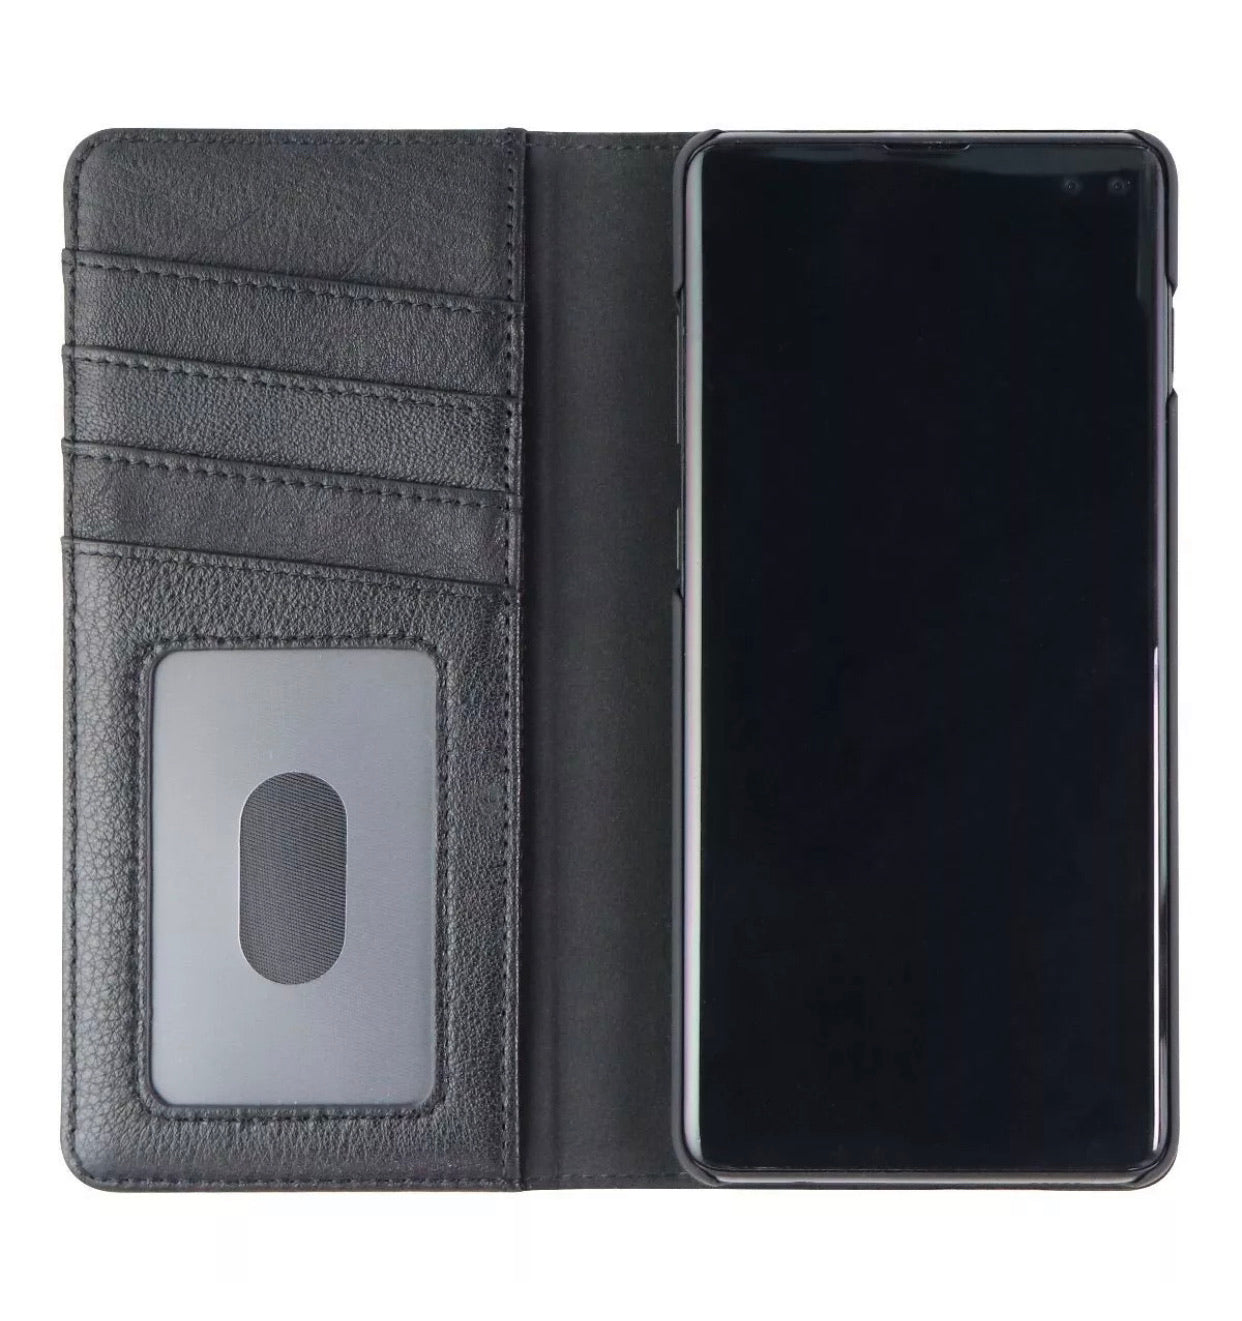 Samsung Galaxy S10+ Wallet Folio Case